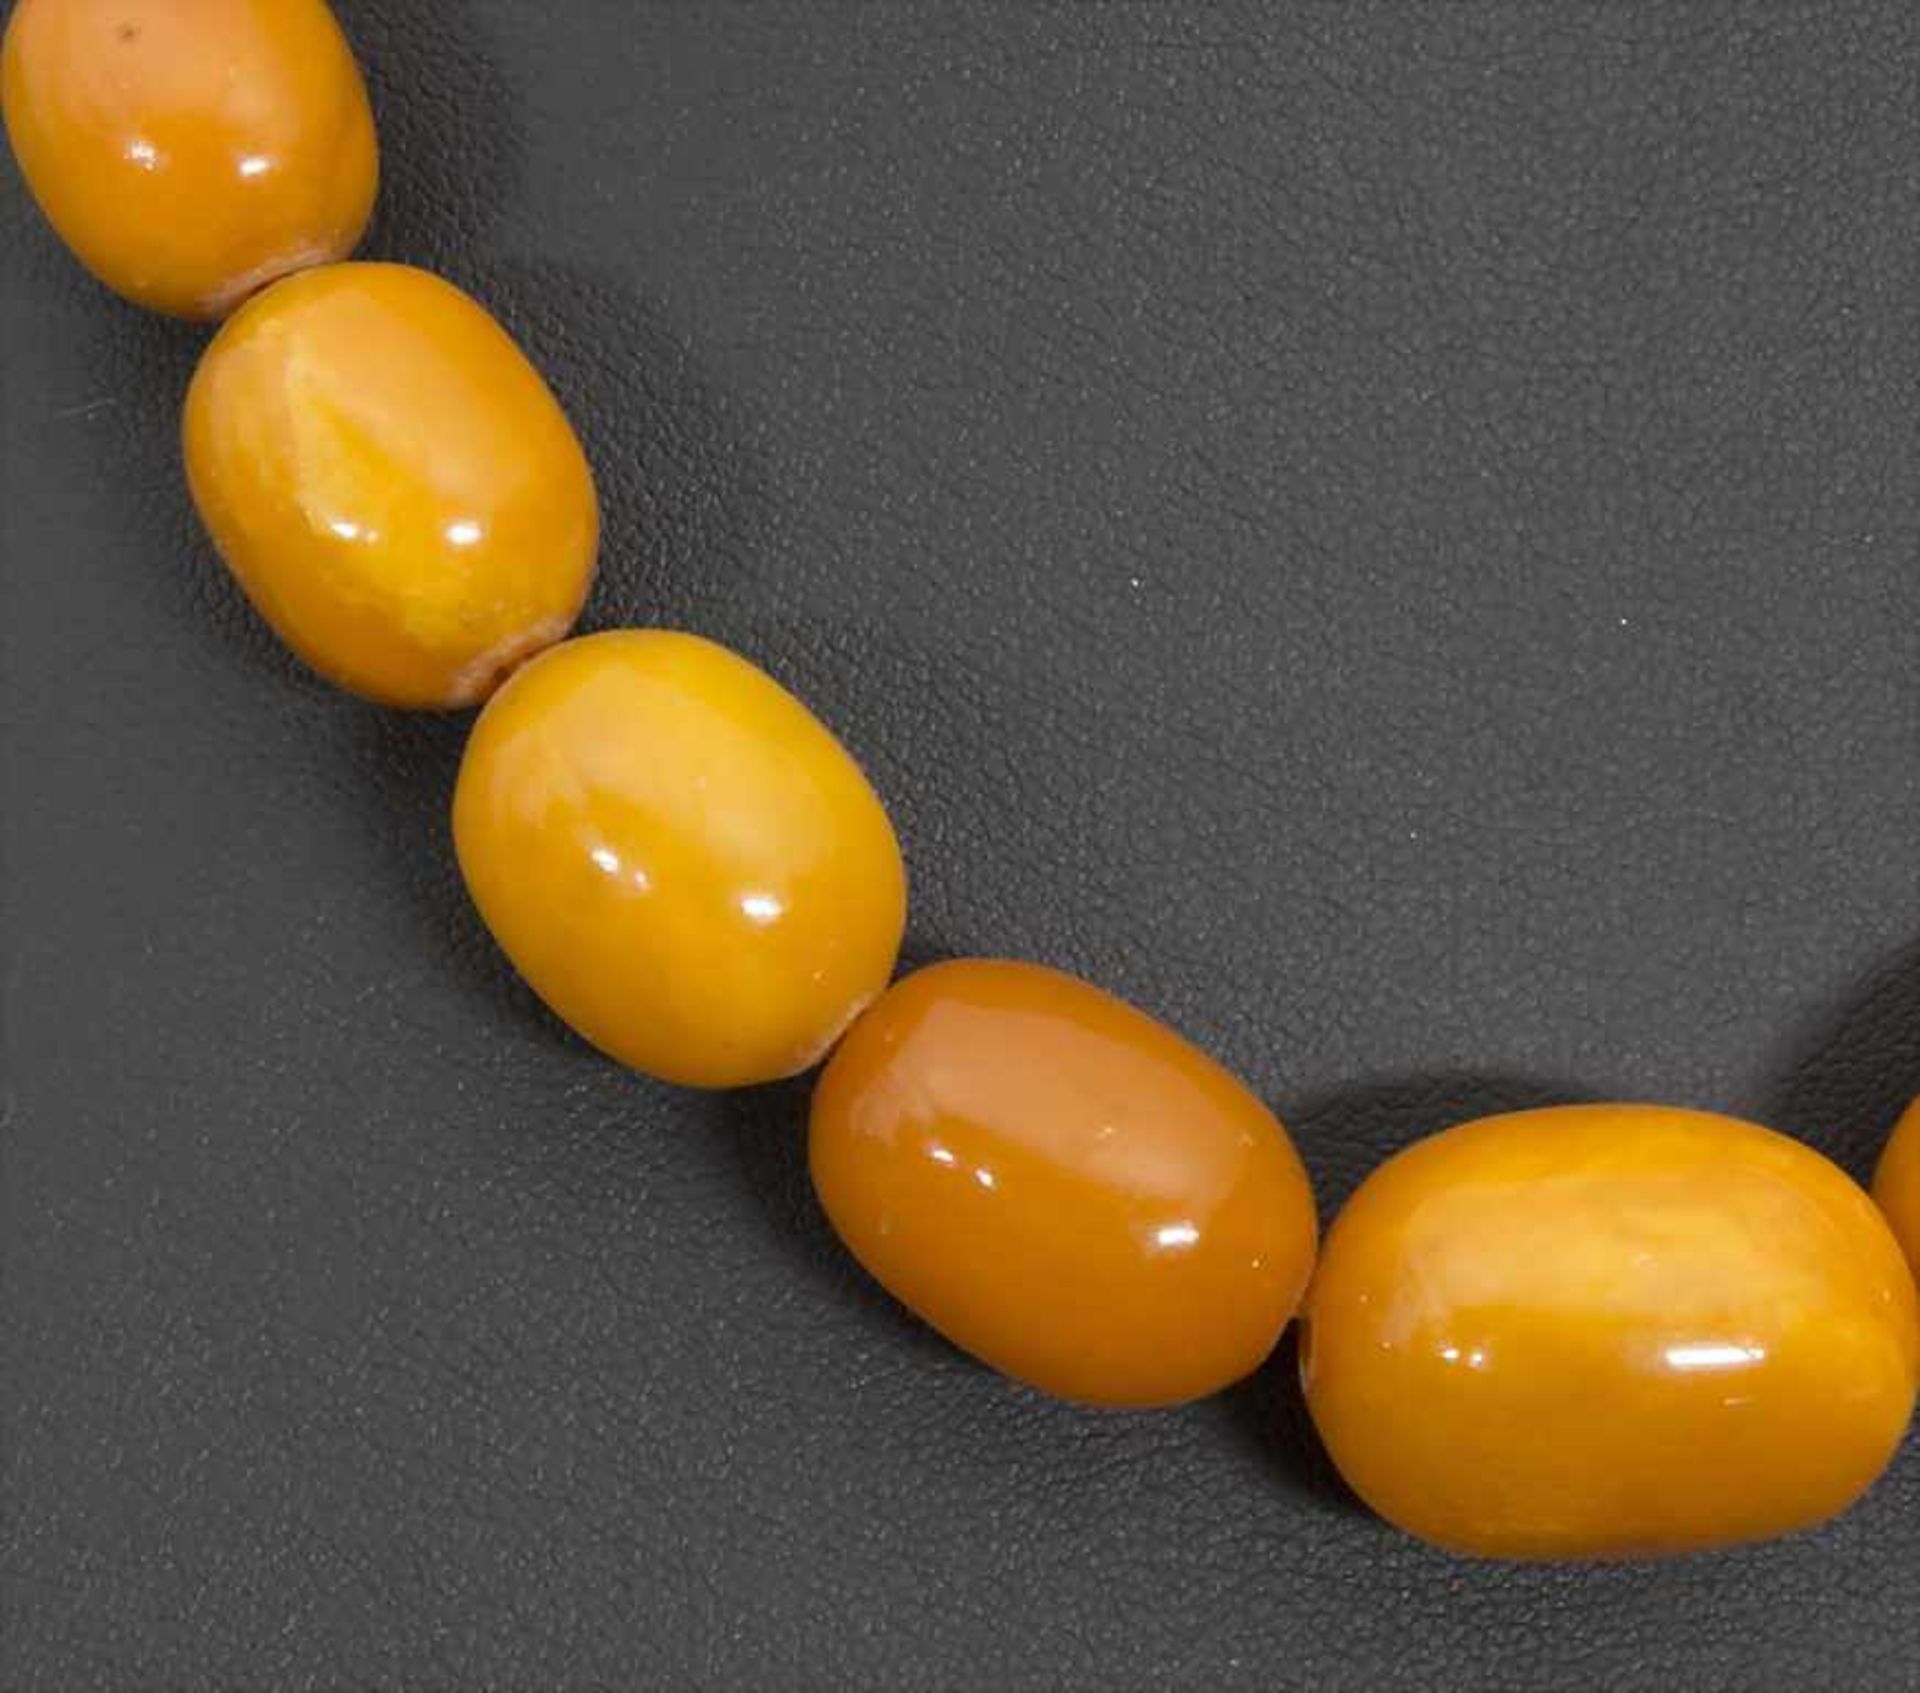 Bernsteinkette / Oliven Kette / An amber olives chain - Image 2 of 3